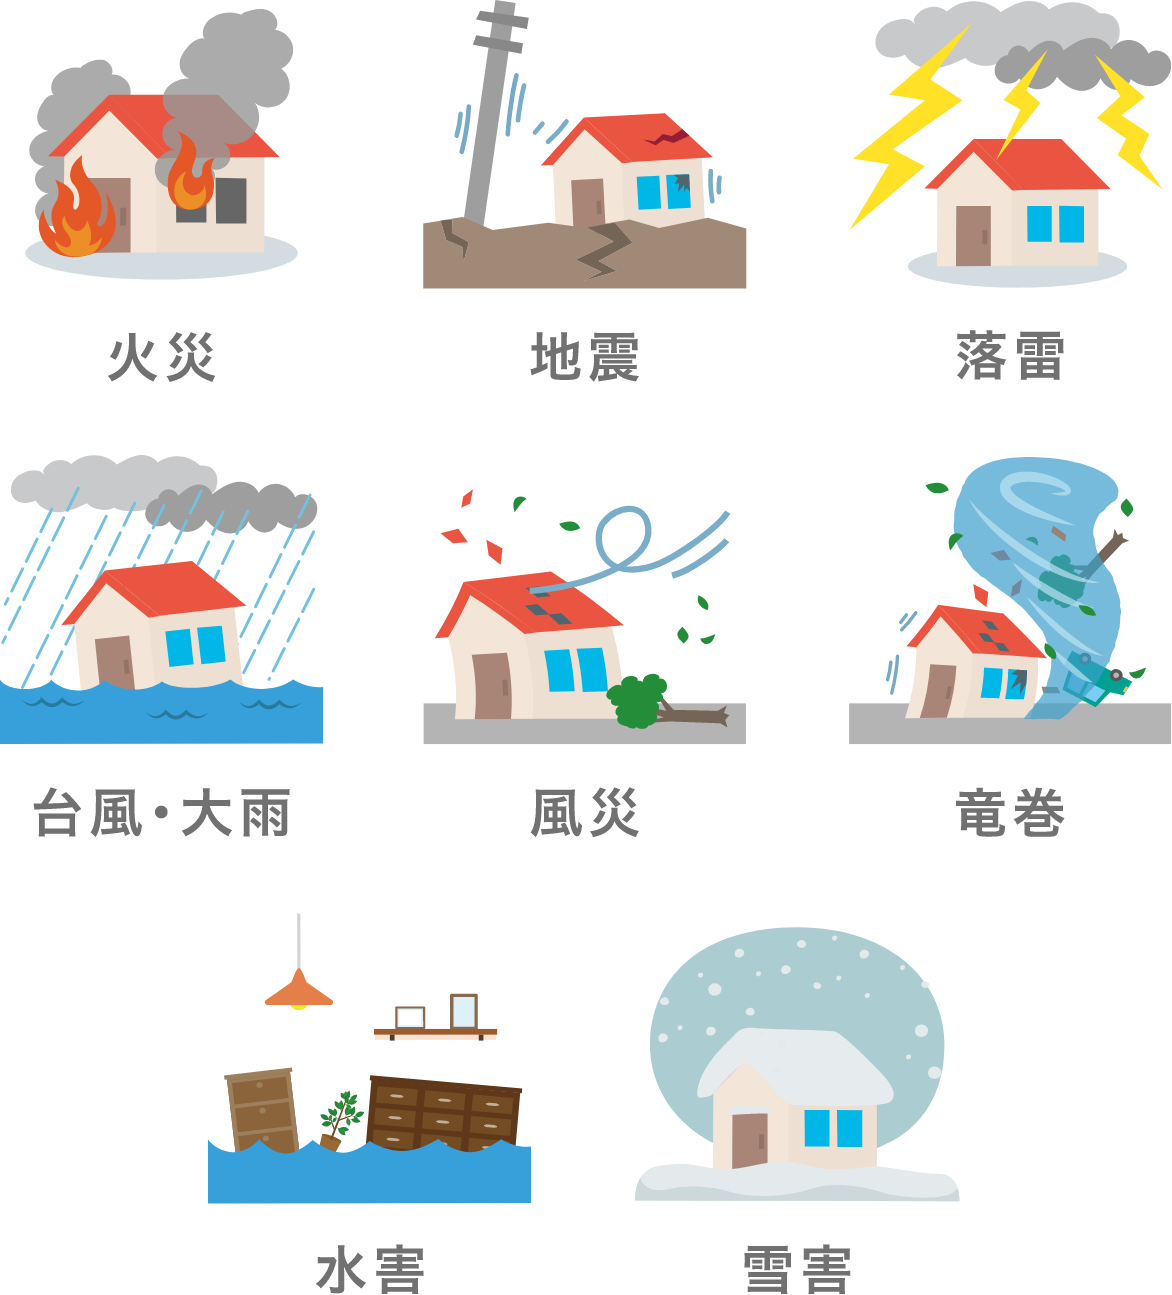 火災、地震、落雷、台風・大雨、風災、竜巻、水害、雪害